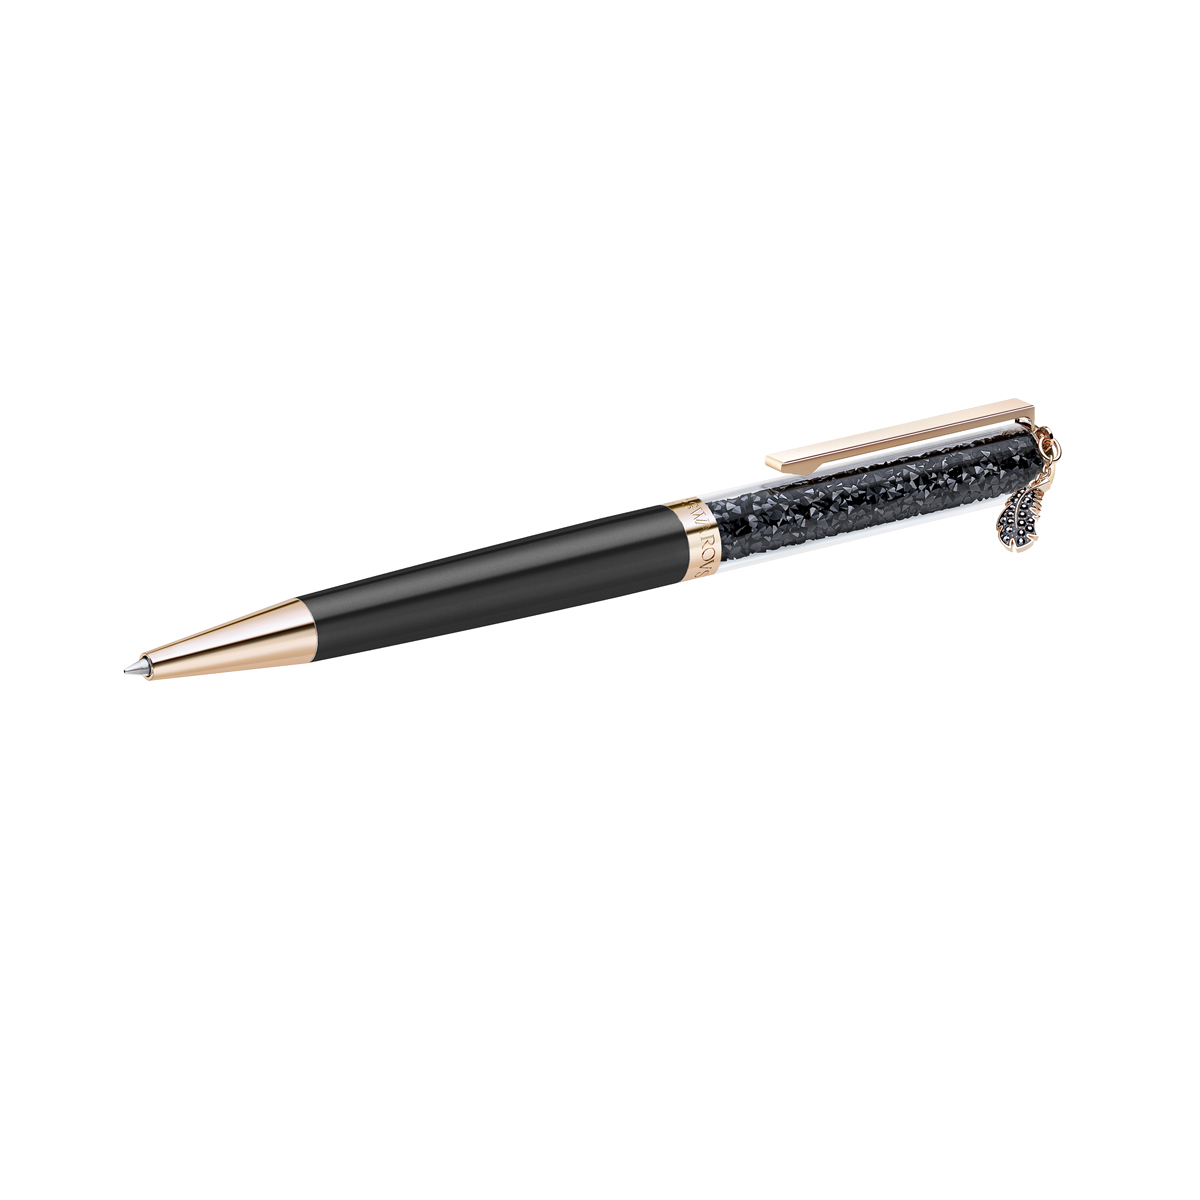 Swarovski Crystalline Black Ballpoint Pen with Feather